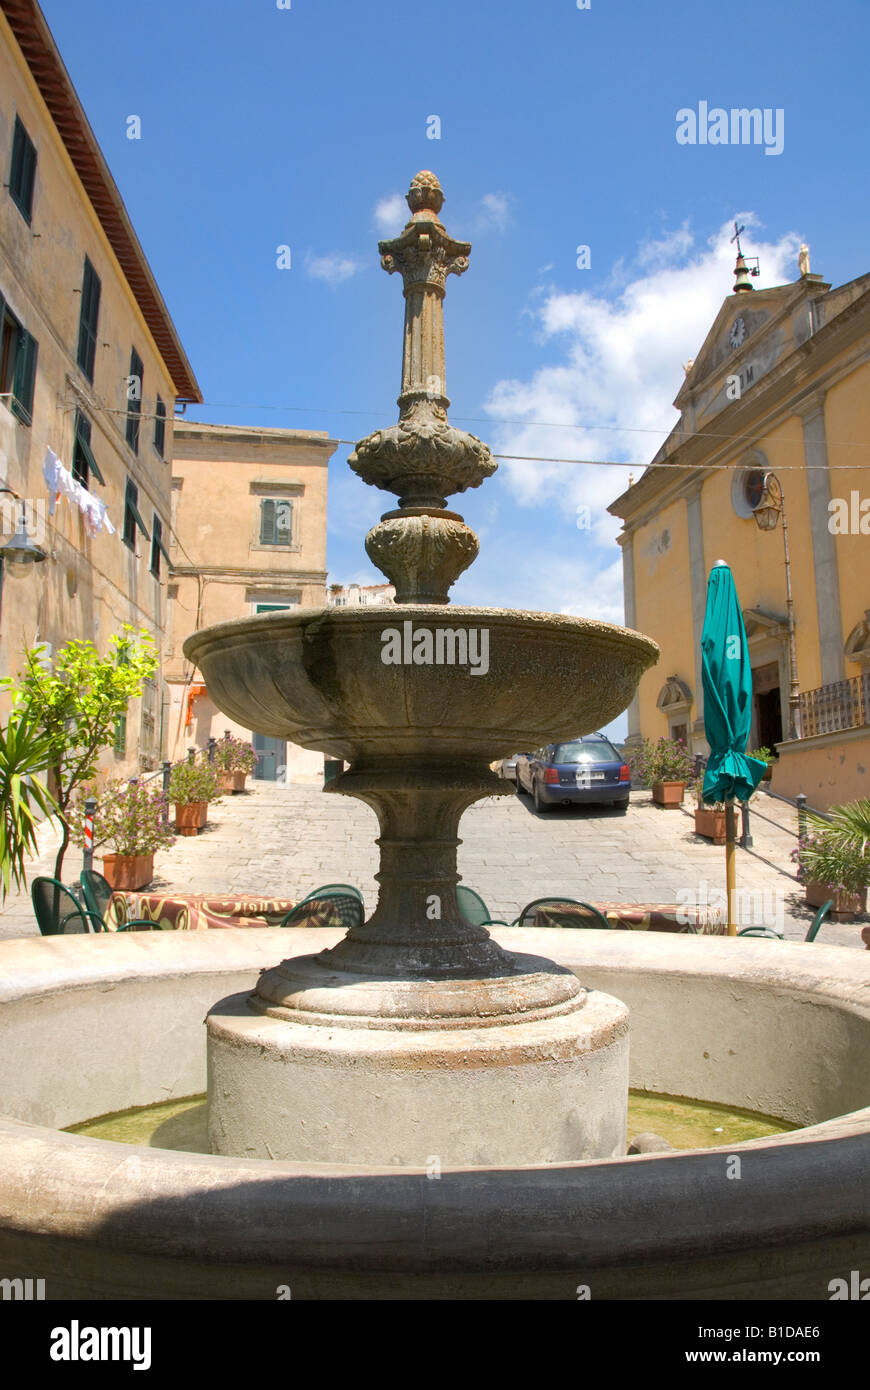 Fontaine dans la ville montagneuse de Rio nell'Elba Ile d'Elbe Toscane Italie Banque D'Images